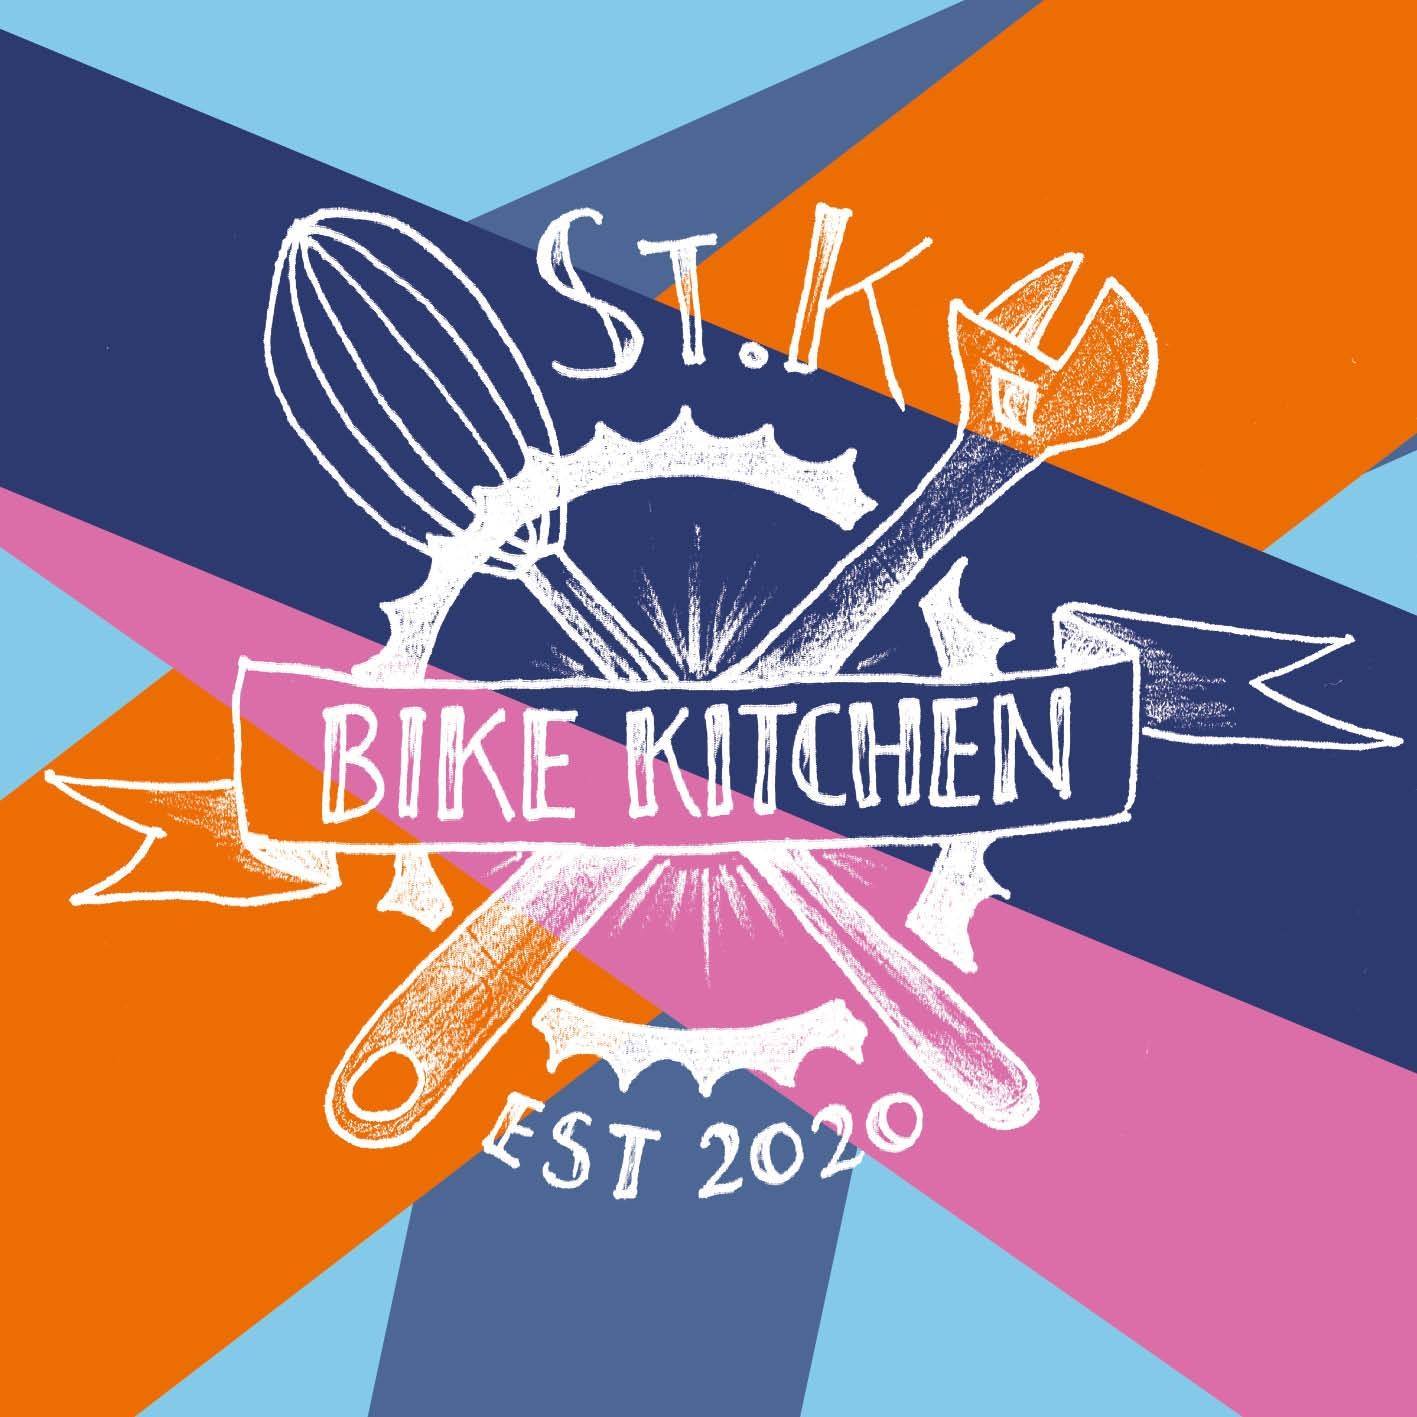 St Kilda Bike Kitchen